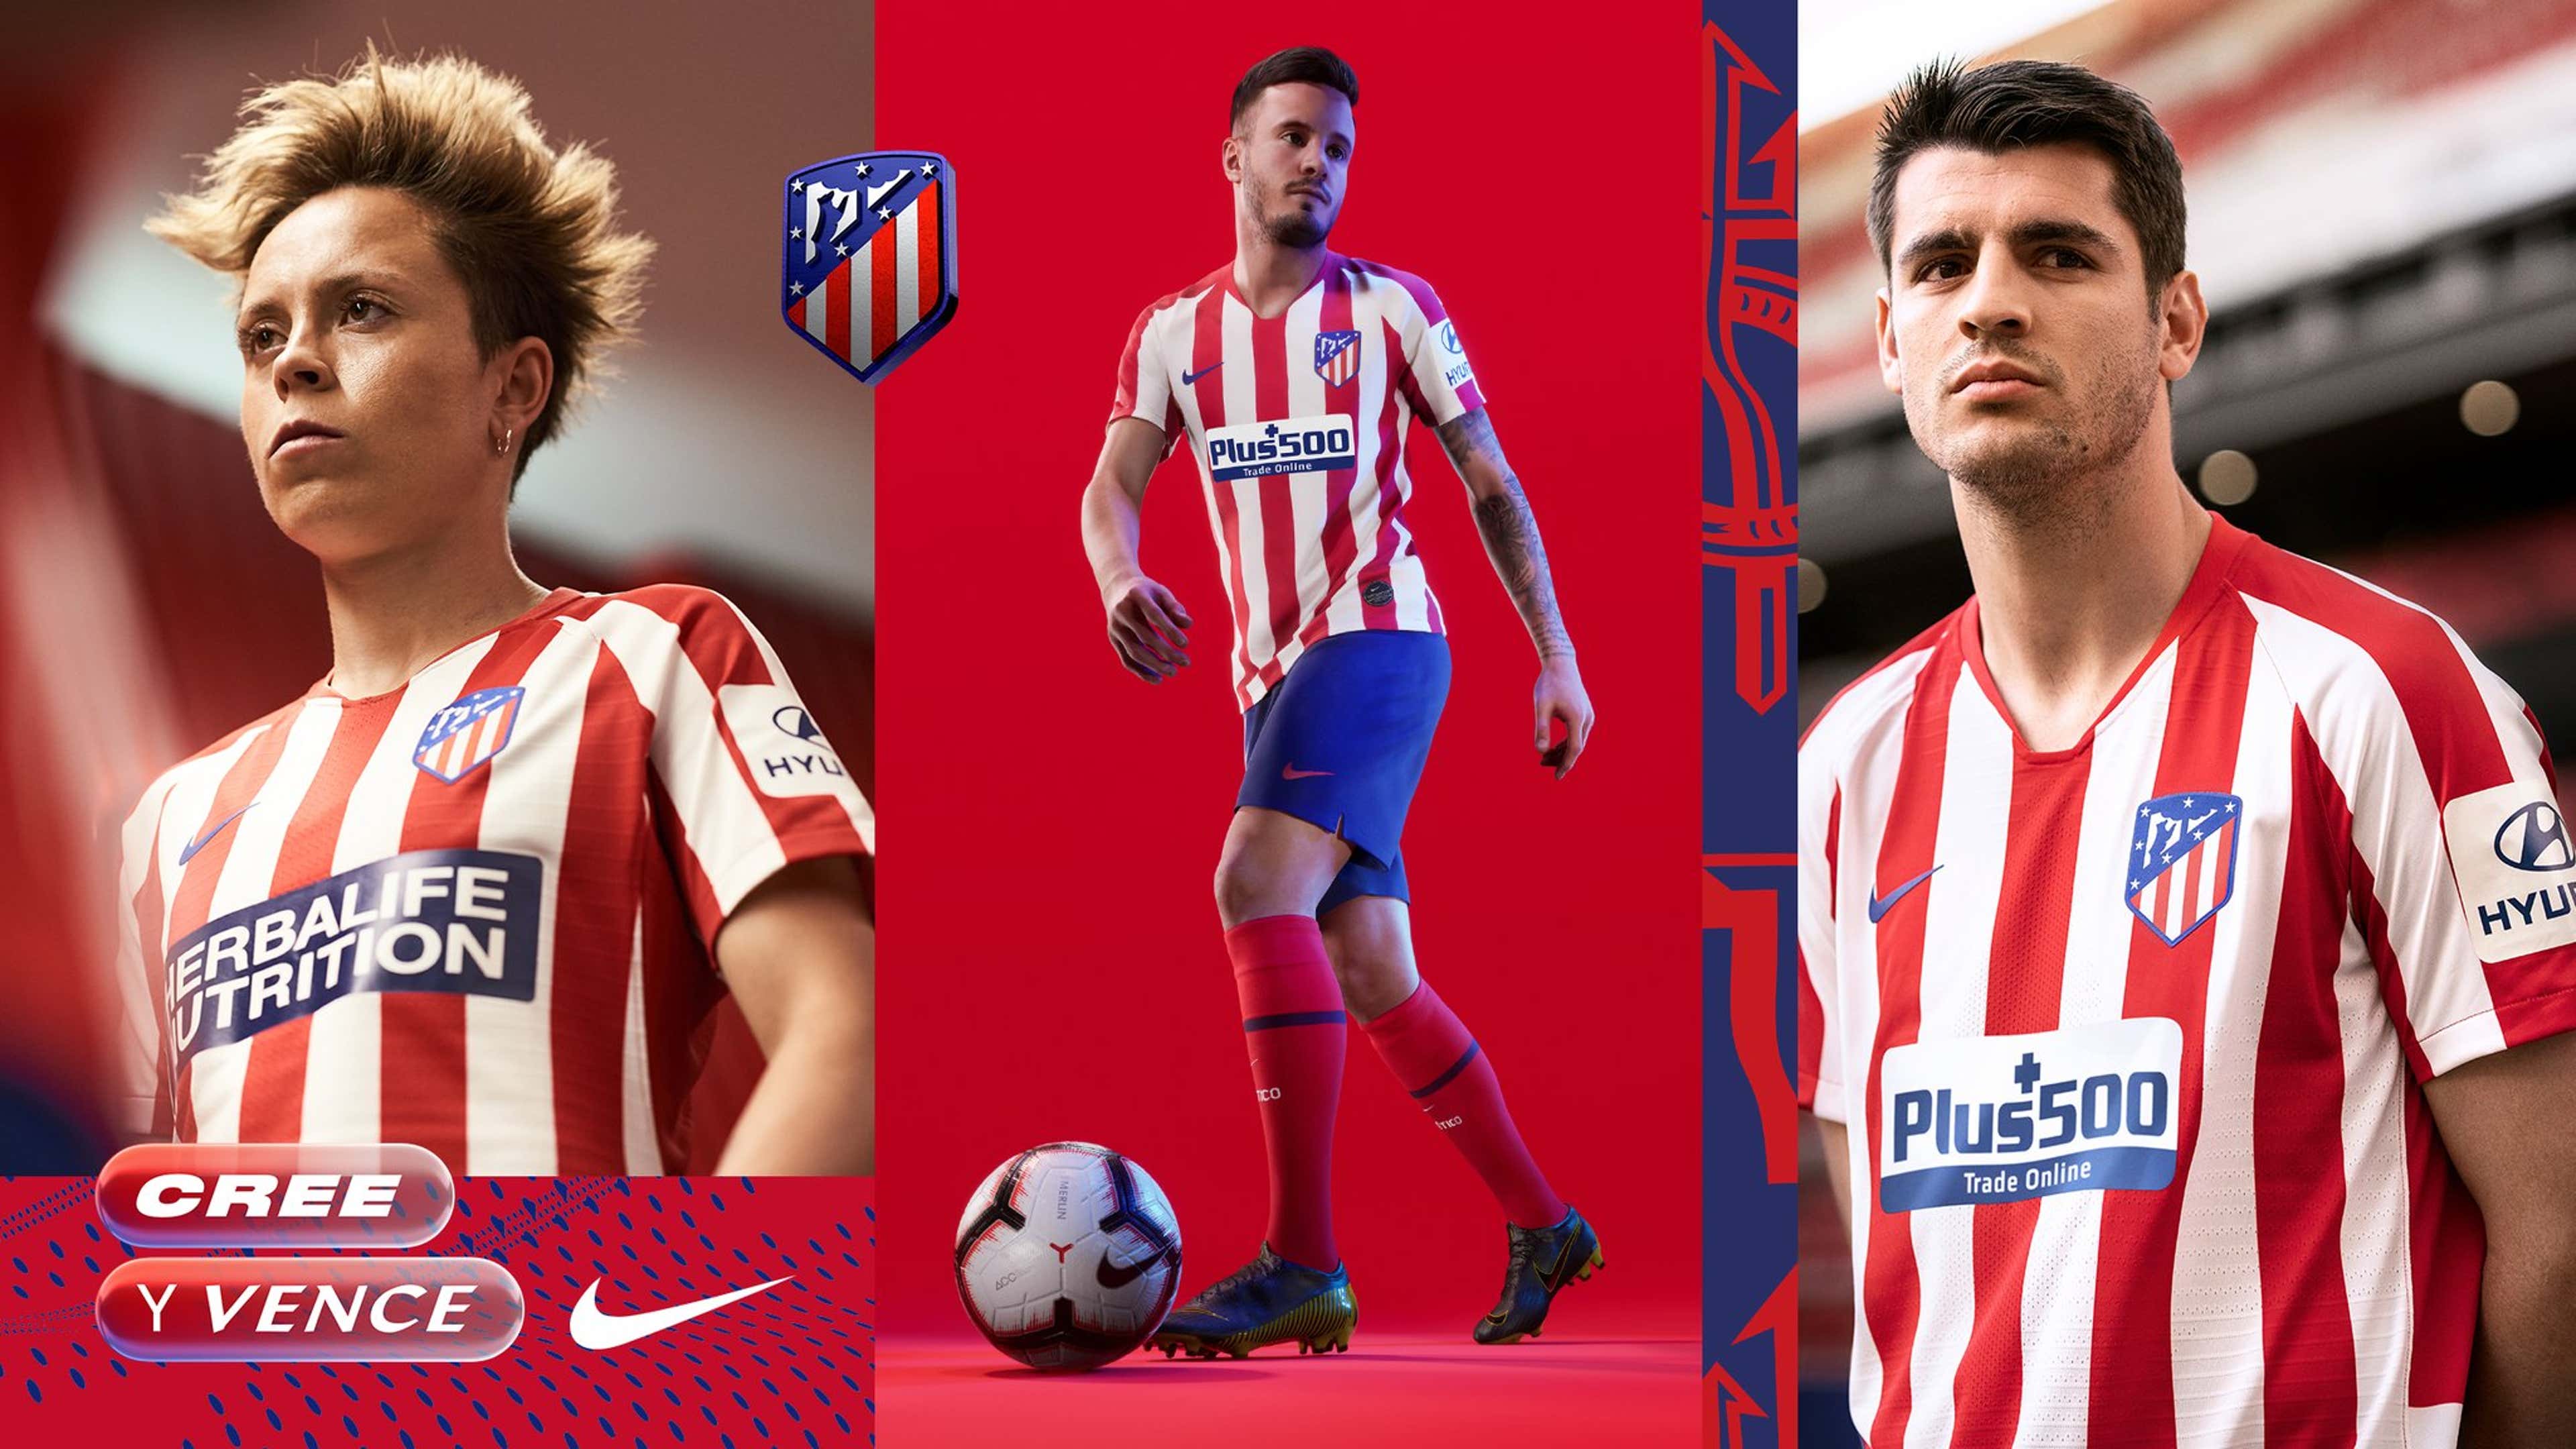 Camiseta del Atlético Madrid 2019 🥇 Camisetas de Futbol